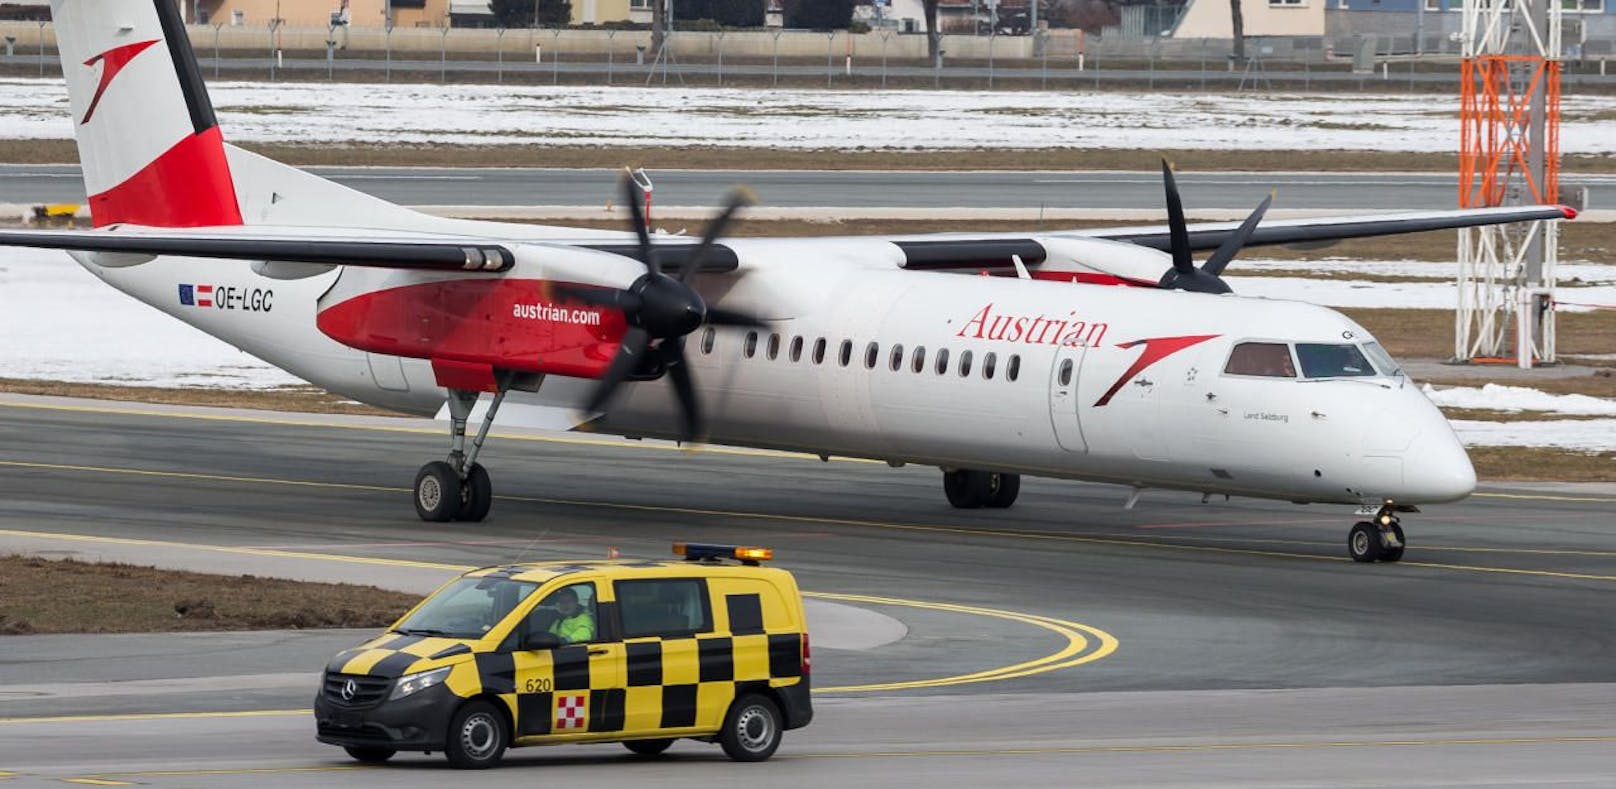 (Symbolbild) Ein Flugzeug des Typs Dash-8 Q400 am Innsbrucker Flughafen.